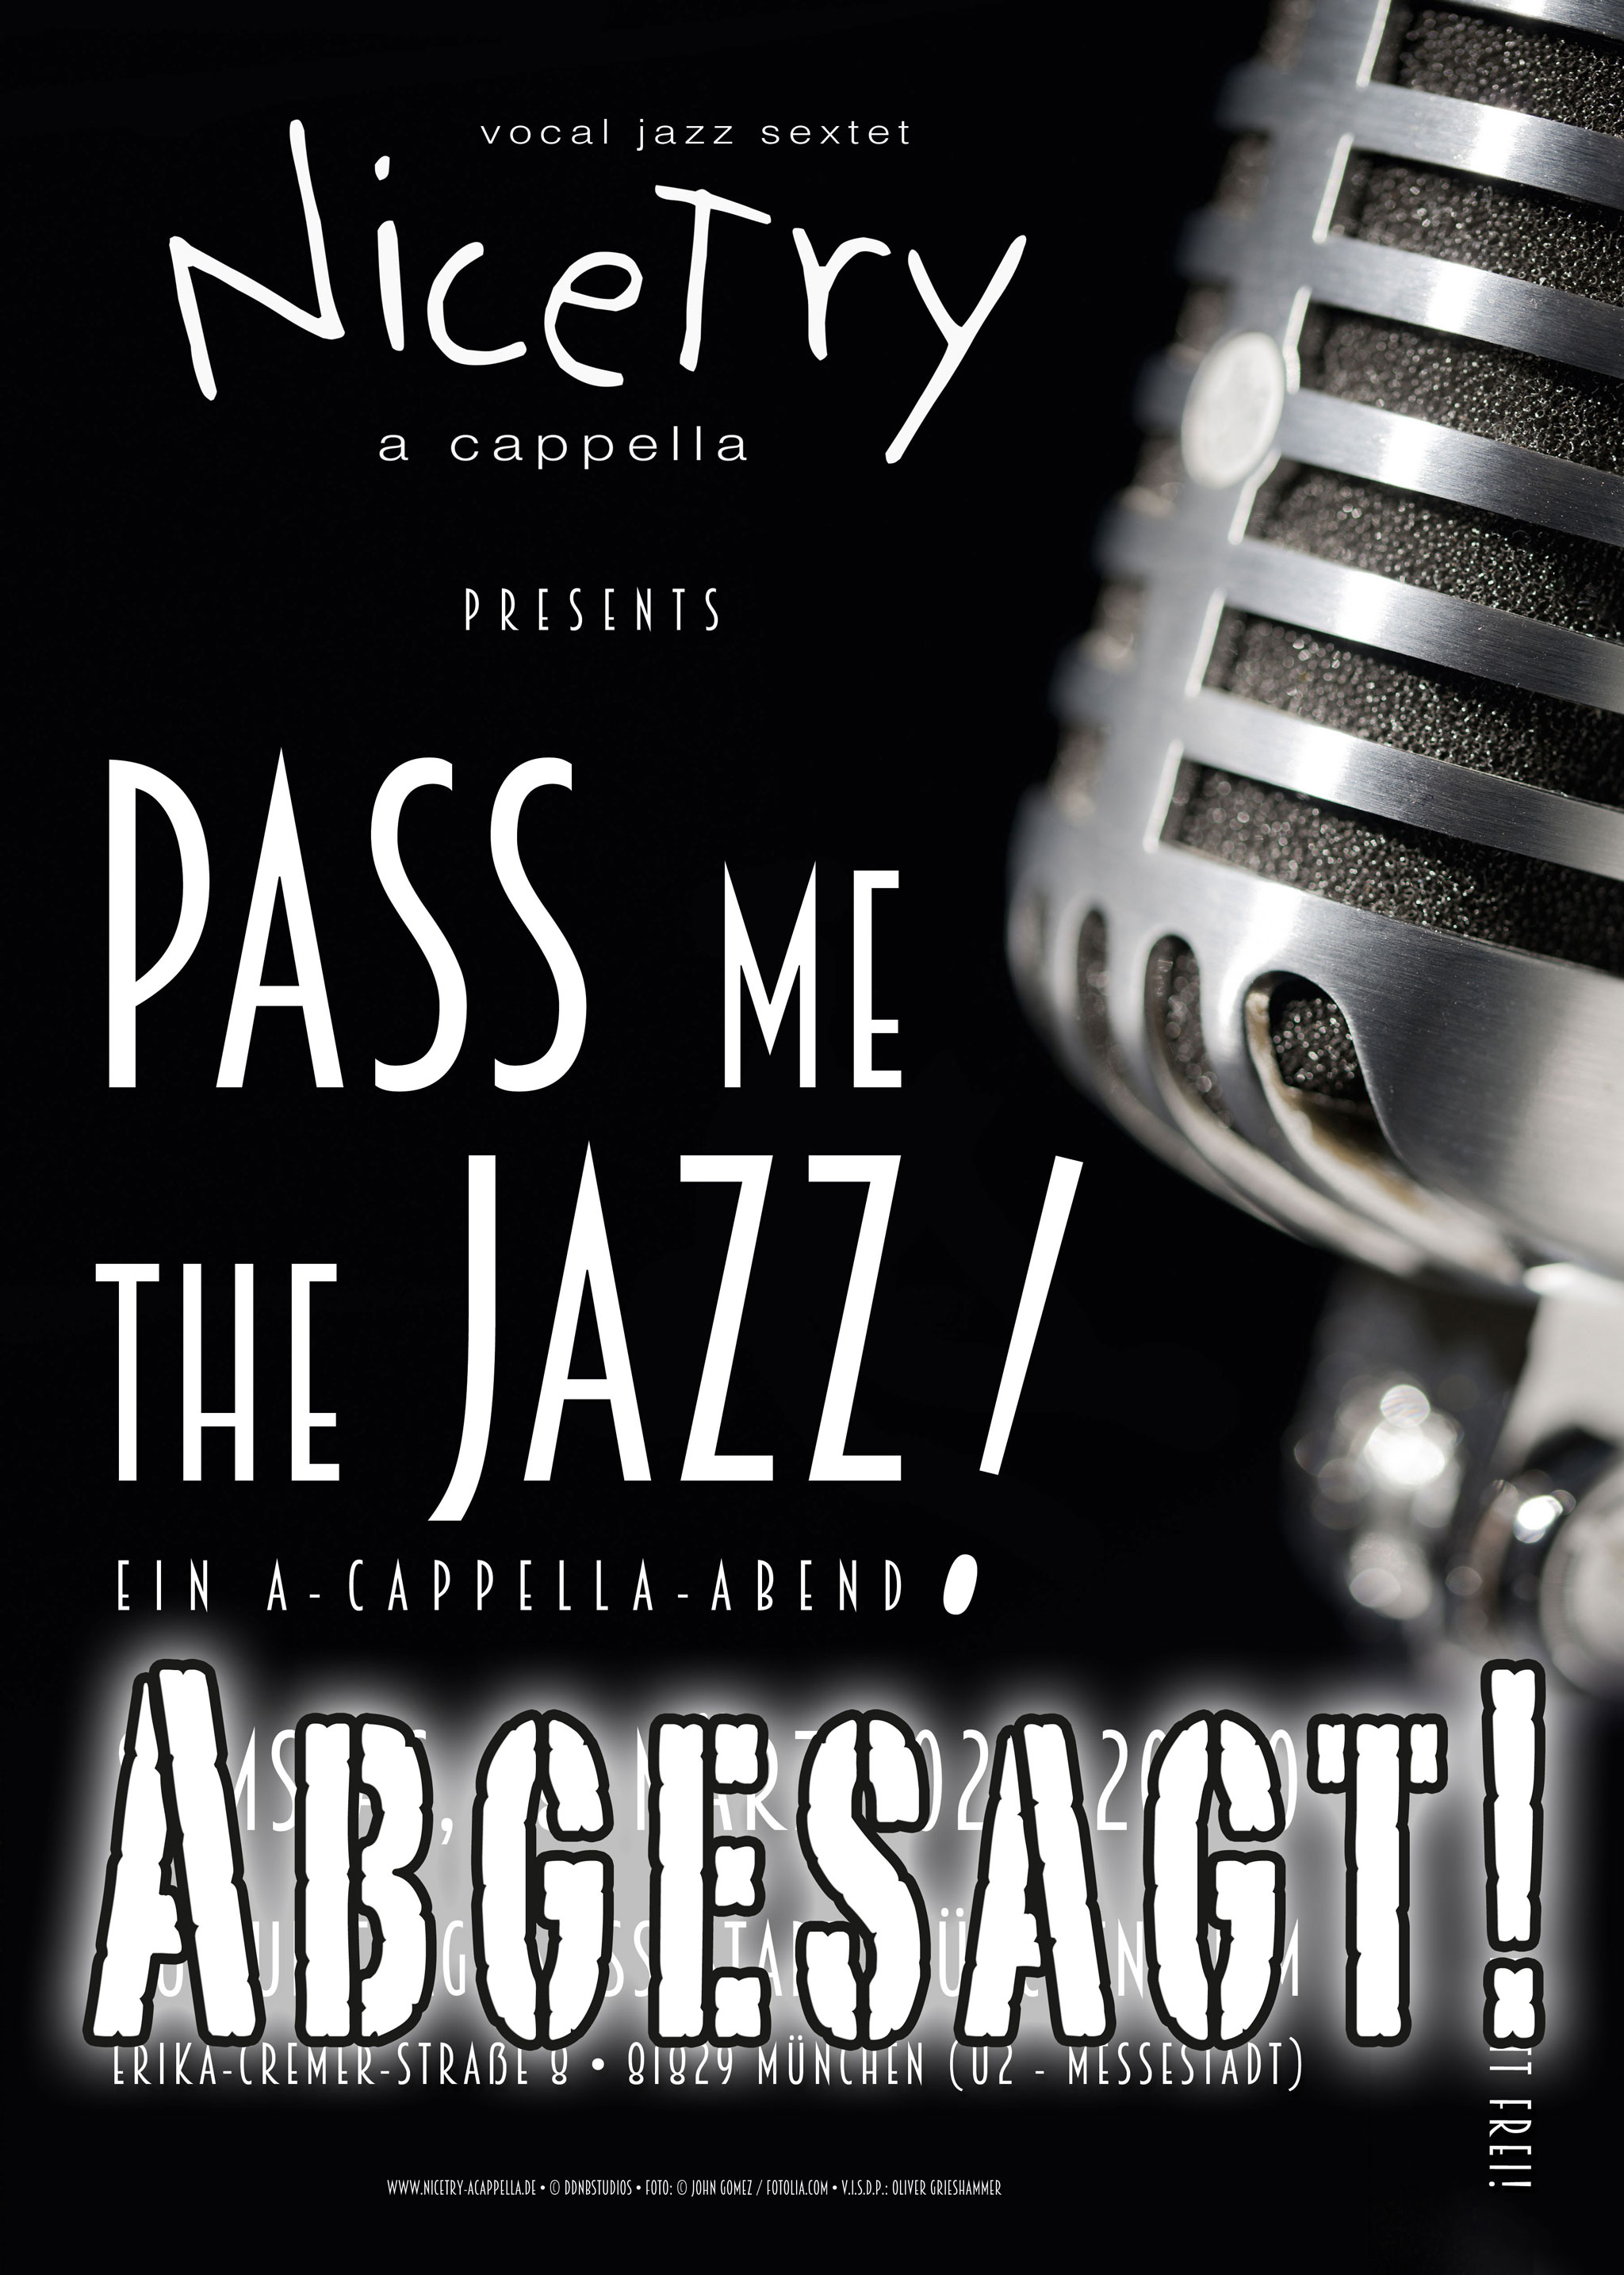 "Pass Me The Jazz" – Konzertankündigung NiceTry a cappella - abgesagt